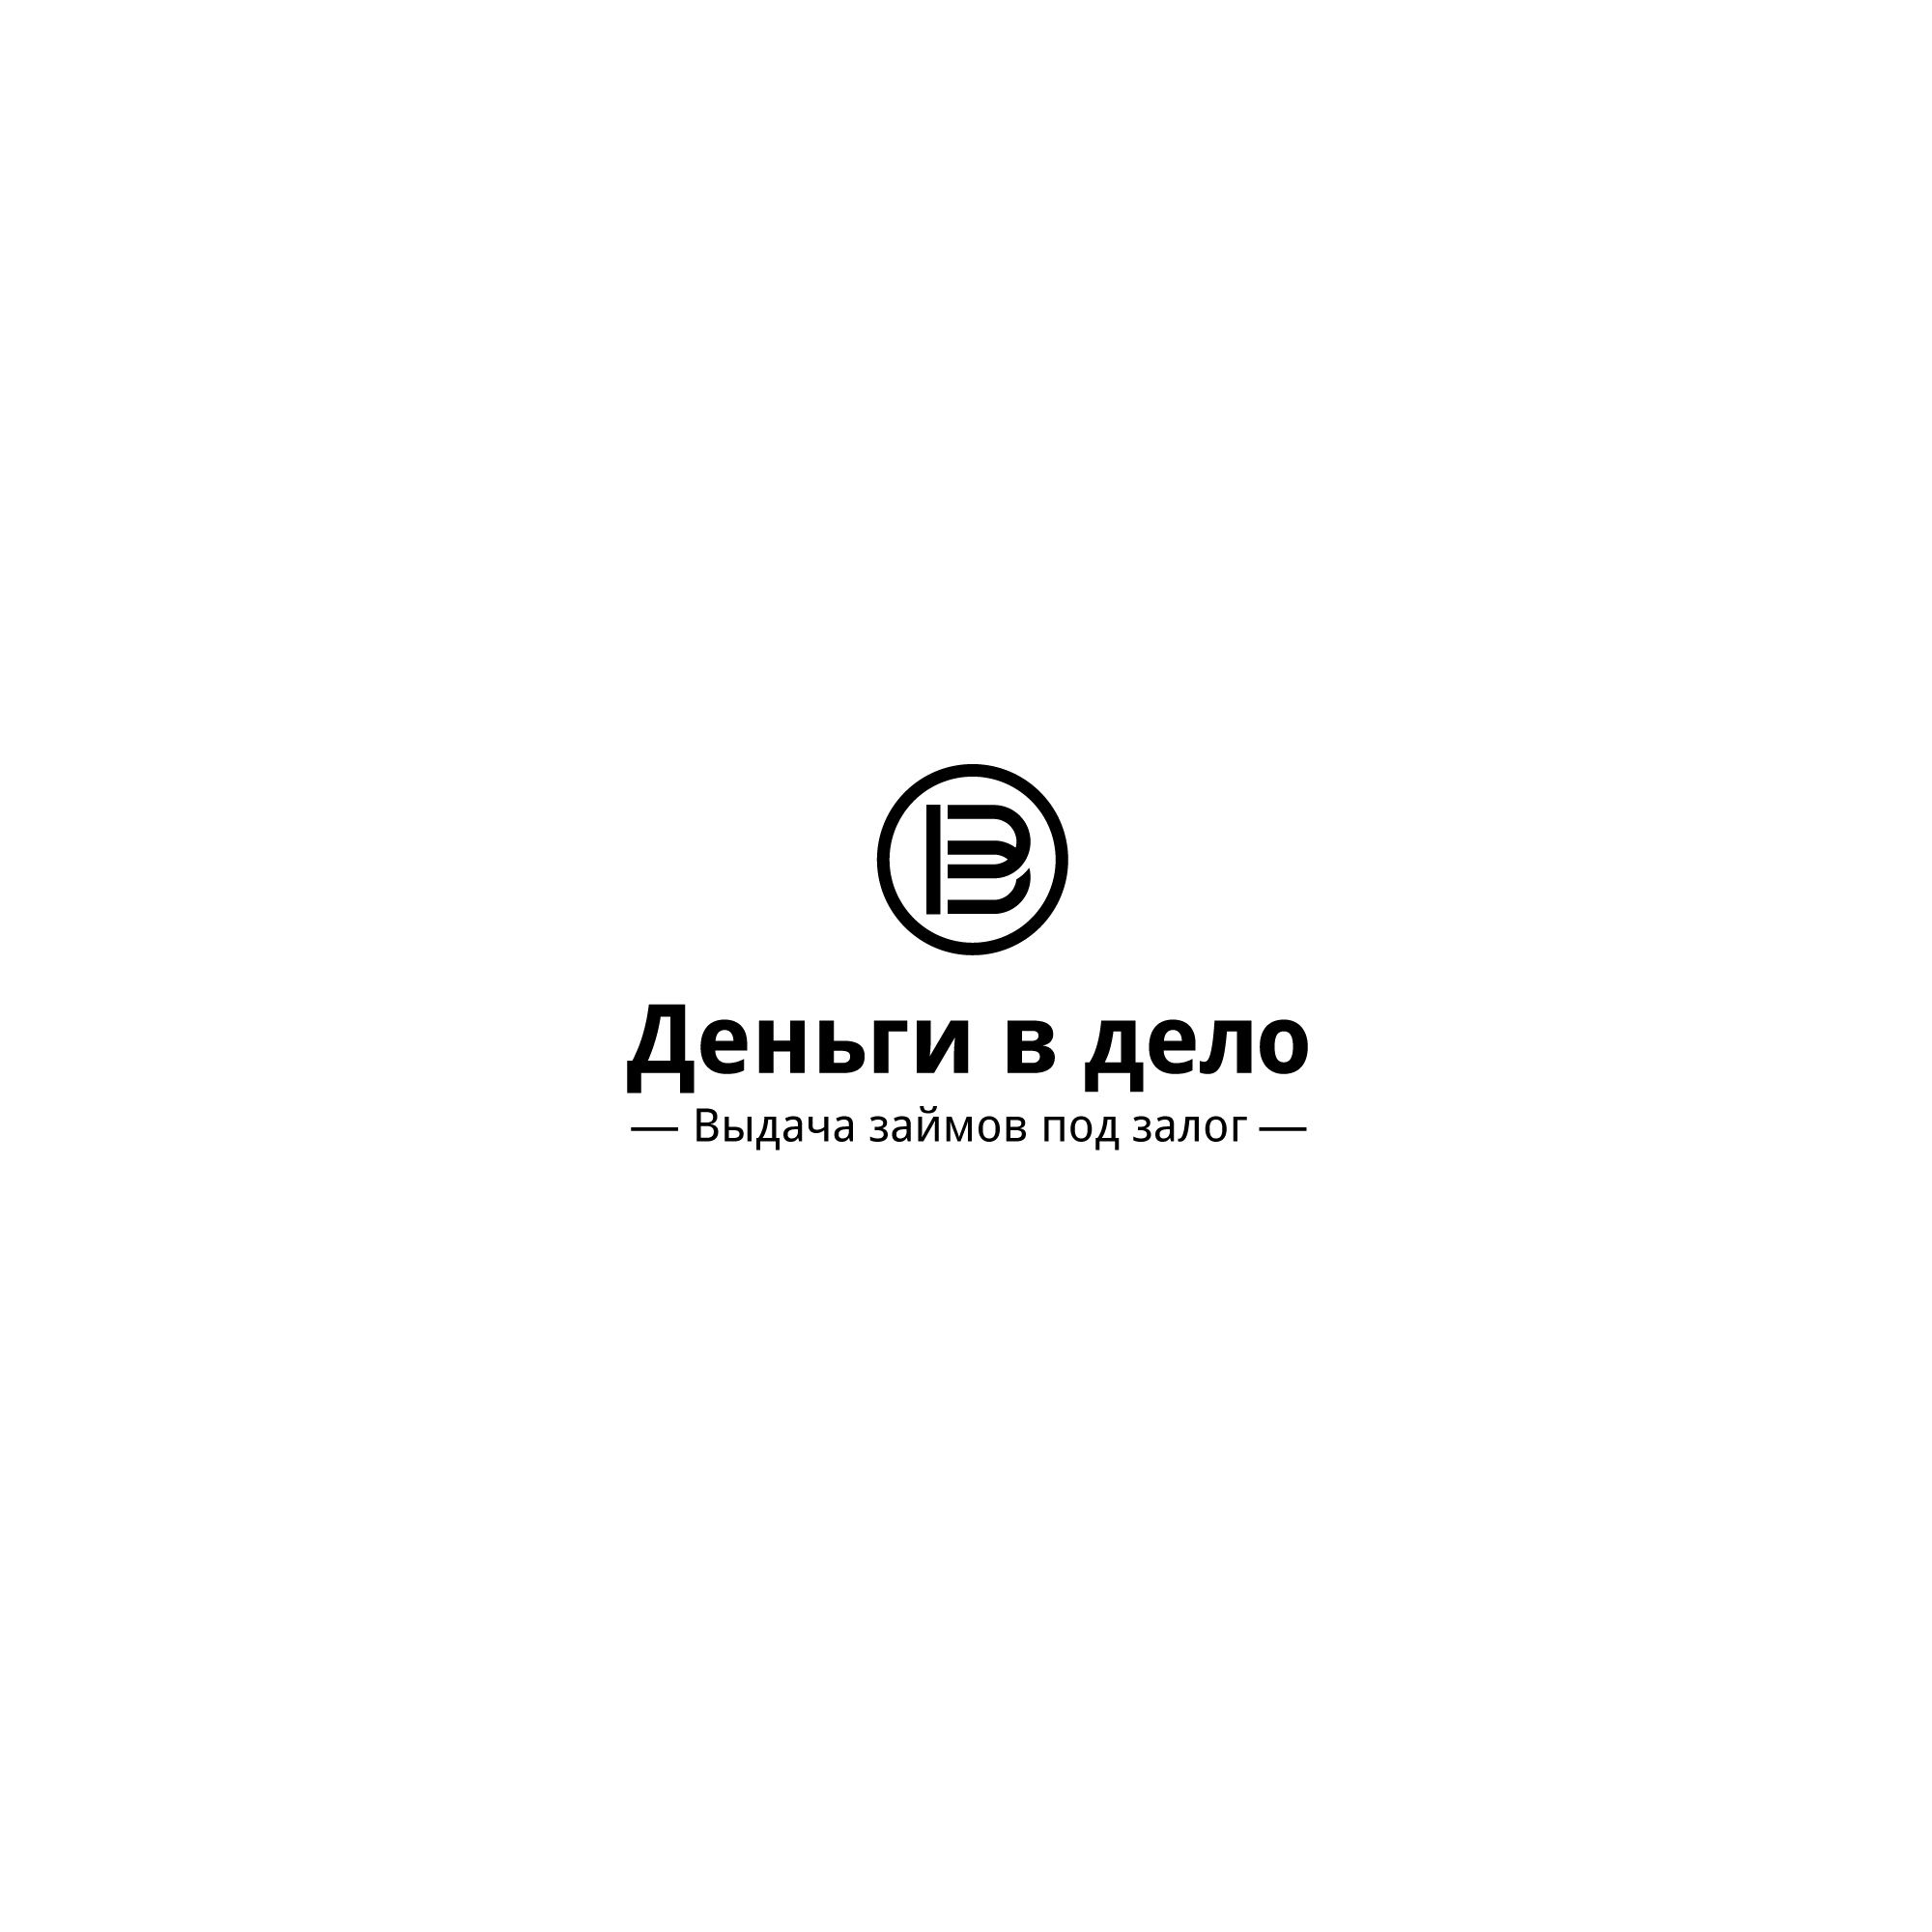 Логотип для Деньги в дело - дизайнер designer12345